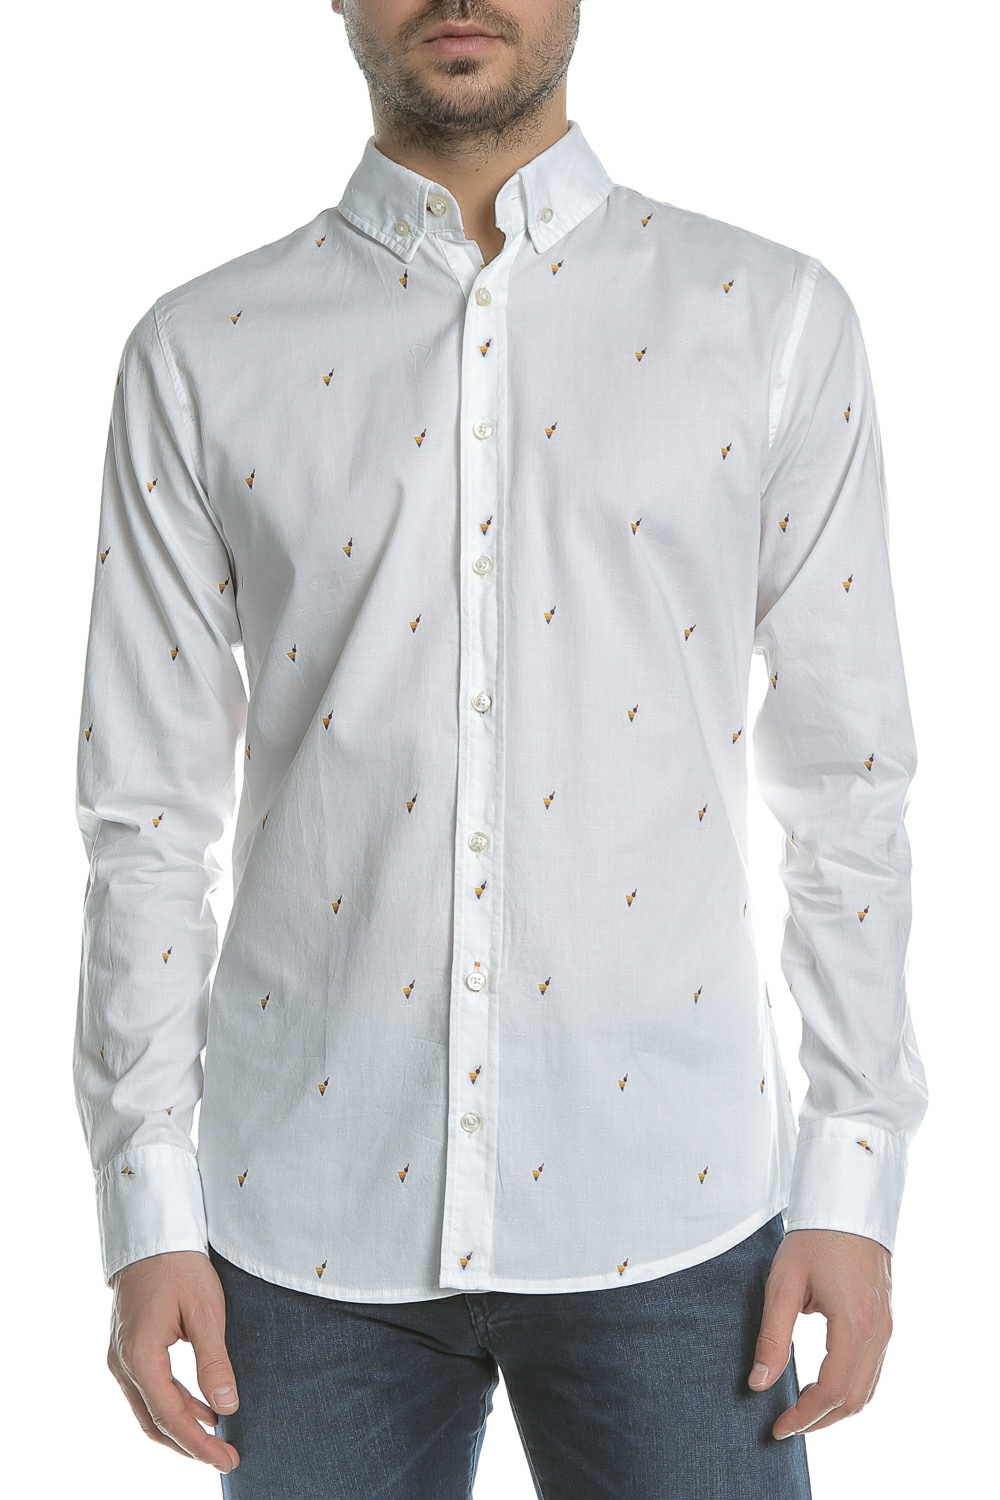 Ανδρικά/Ρούχα/Πουκάμισα/Μακρυμάνικα BOSS - Ανδρικό μακρυμάνικο πουκάμισο BOSS Epreppy λευκό